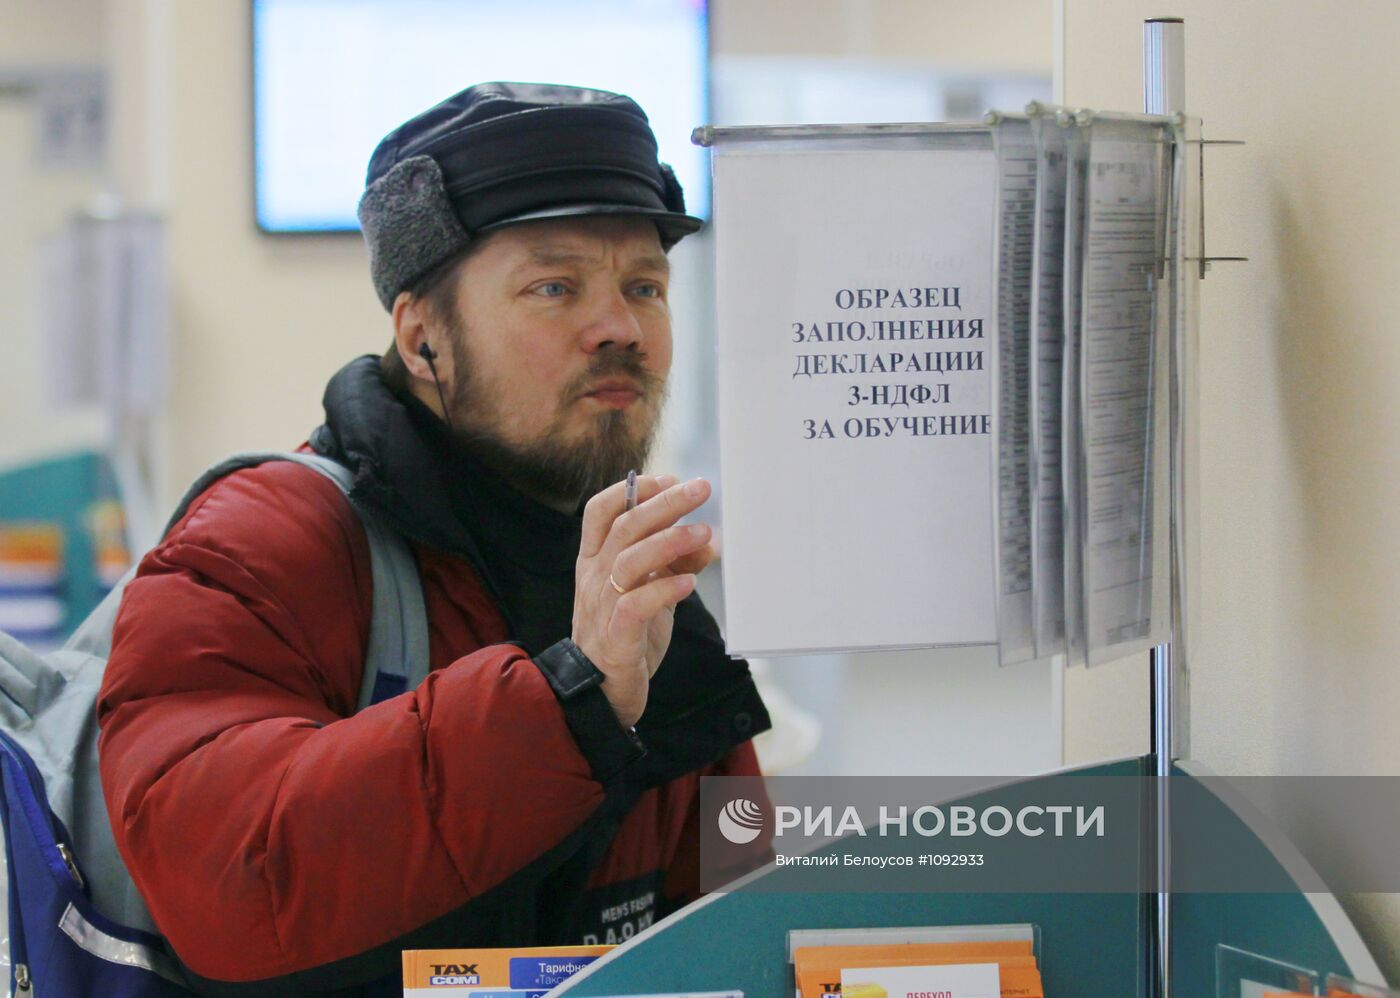 Работа налоговой инспекции в Москве